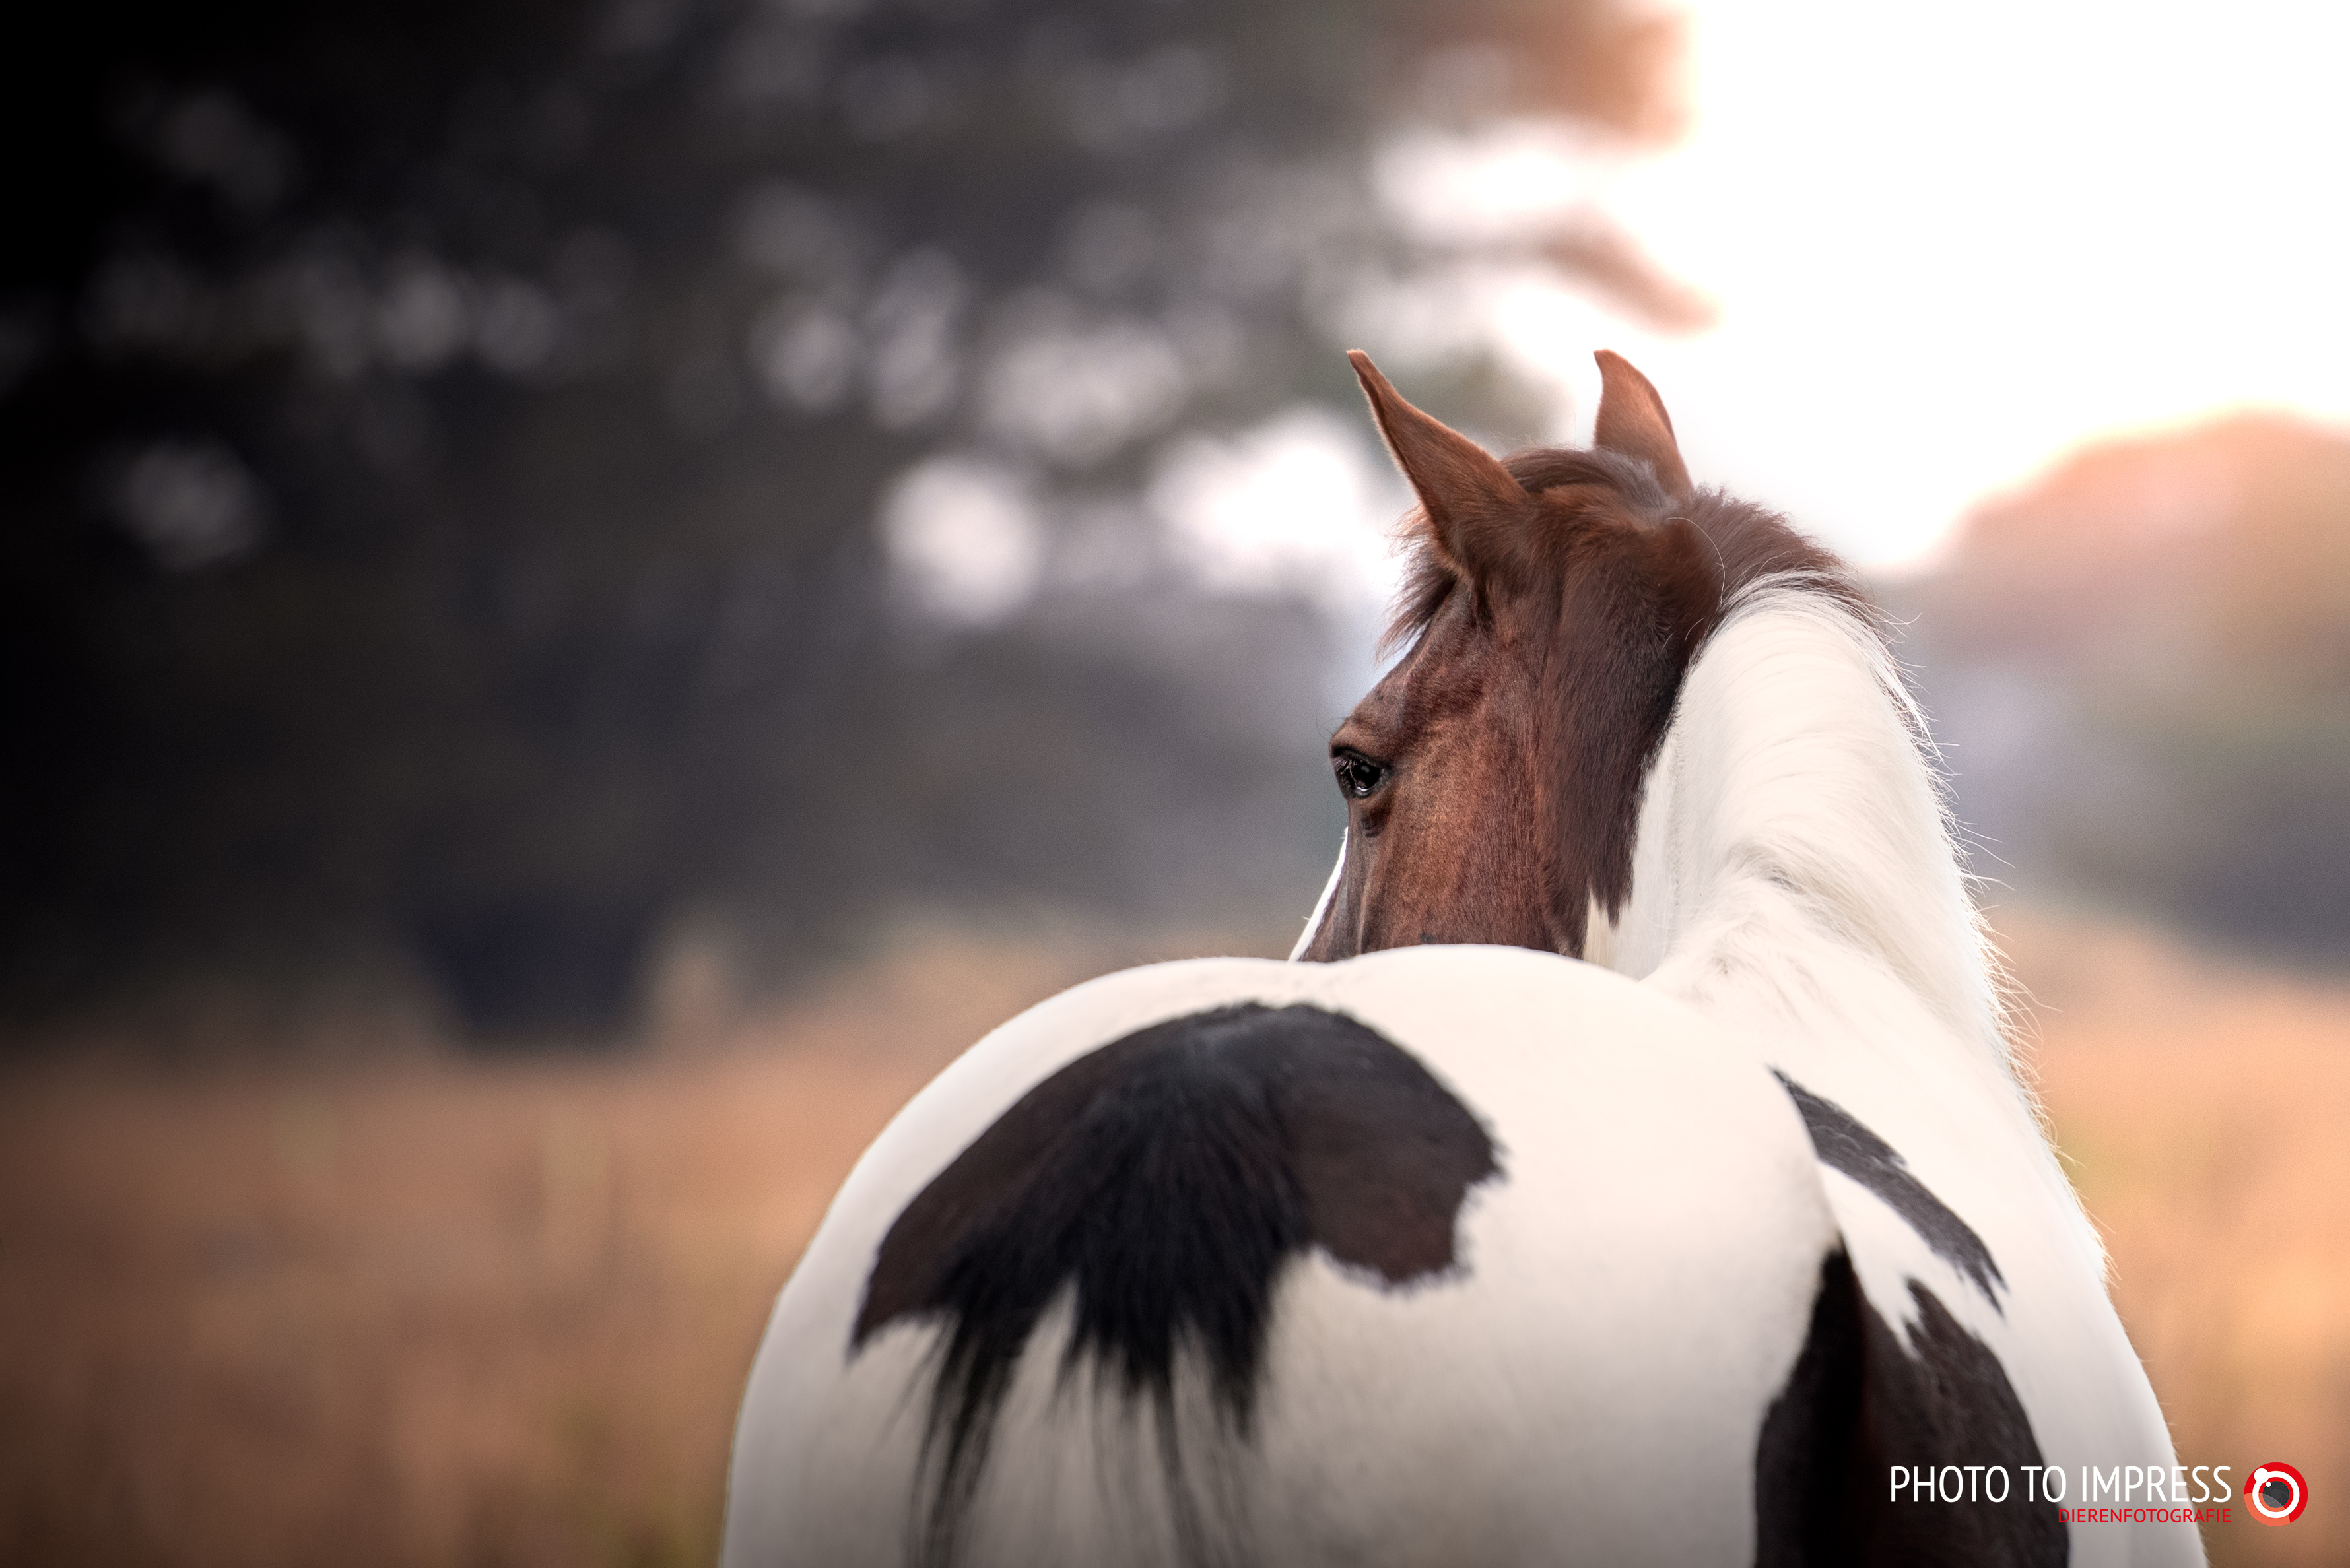 paardenfotografie